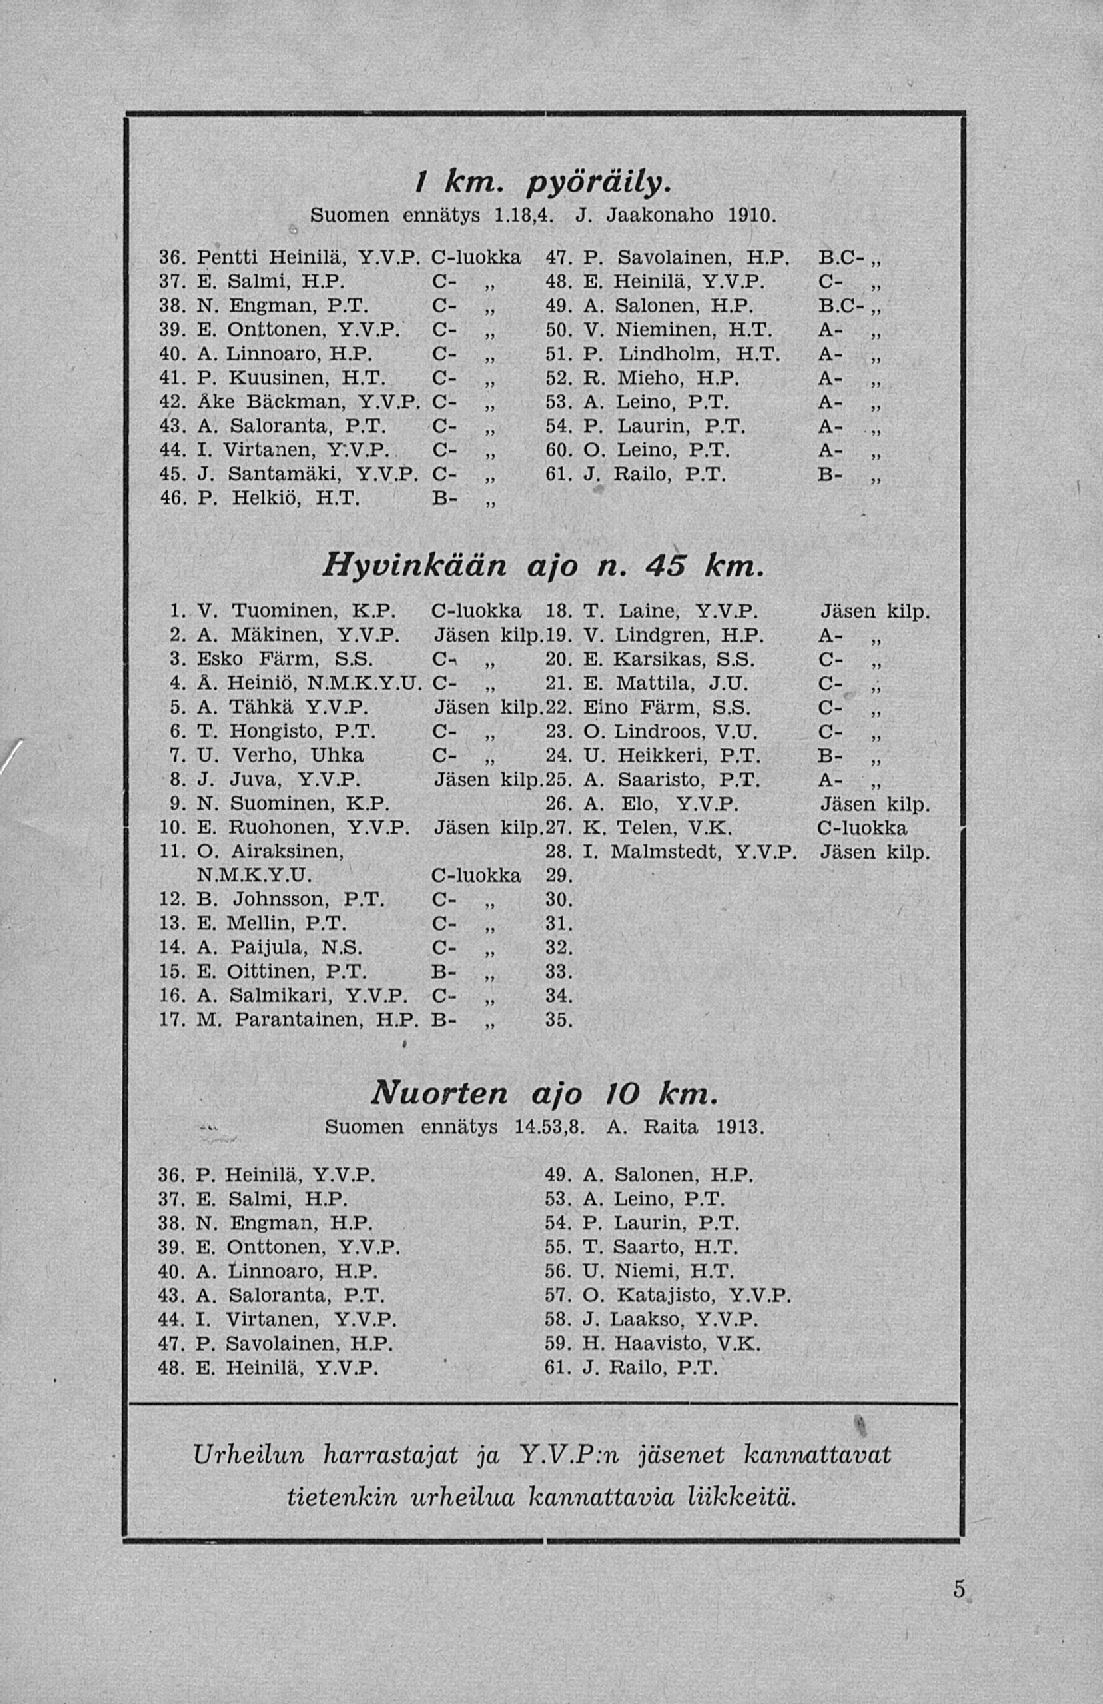 '. : ; ; ; ; I i i / km. pyöräily. Suomen ennätys 1.18,4. J. Jaakonaho 1910. 36. Pentti Heinilä, V.V.P. C-luokka 37. E. Salmi, H.P. C- 38. N. Engman, P.T. C- 39. E. Onttonen, V.V.P. C- 40. A.